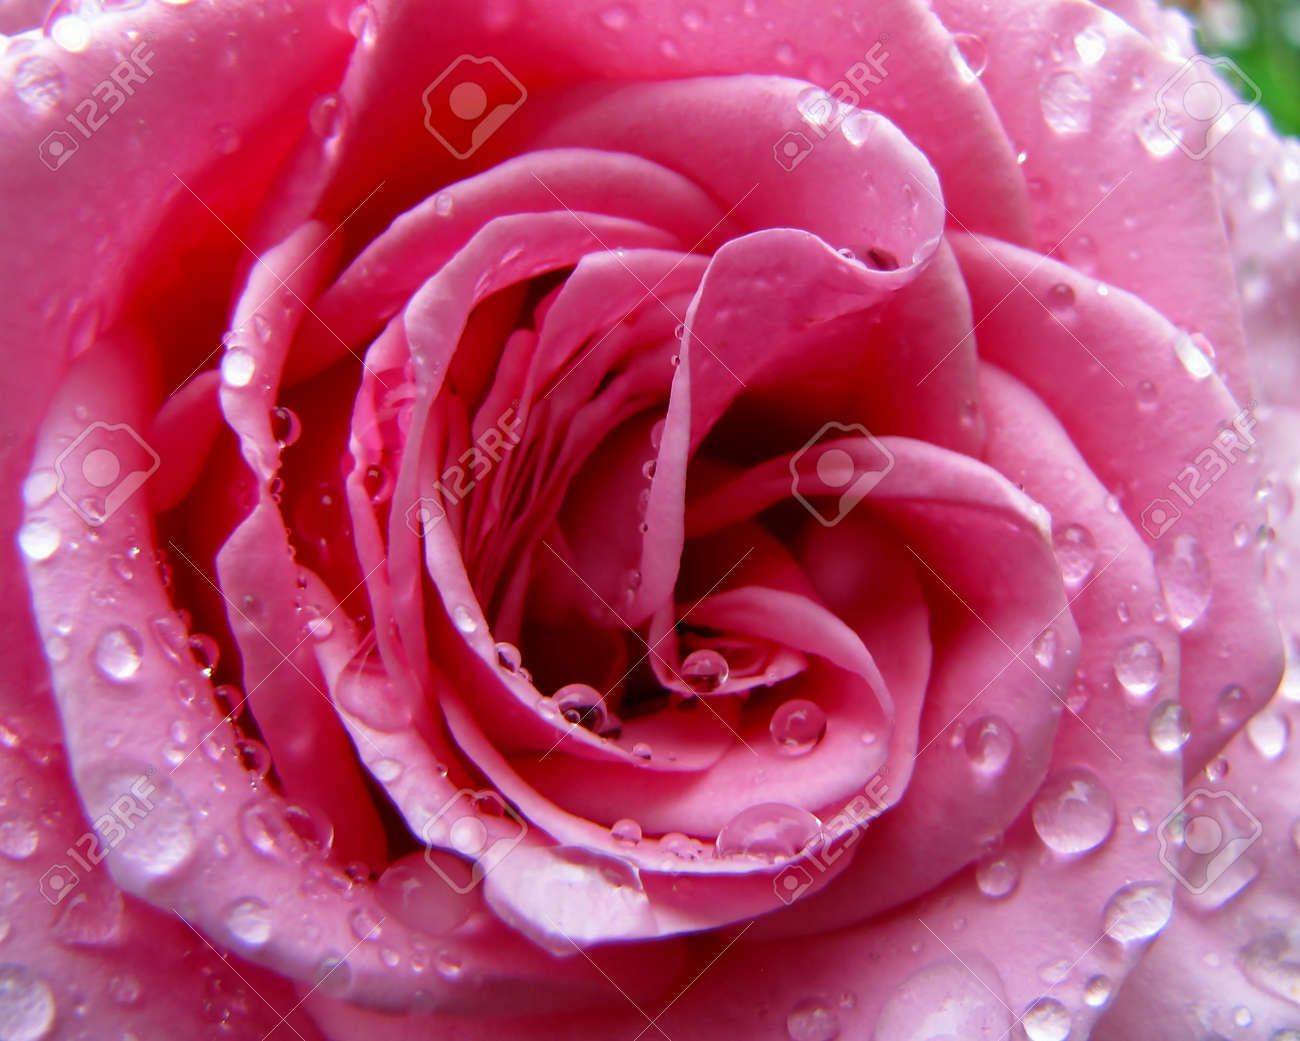 mosa-rosa-rosa-con-gotas-de-lluvia-Foto-de-archivo.jpg